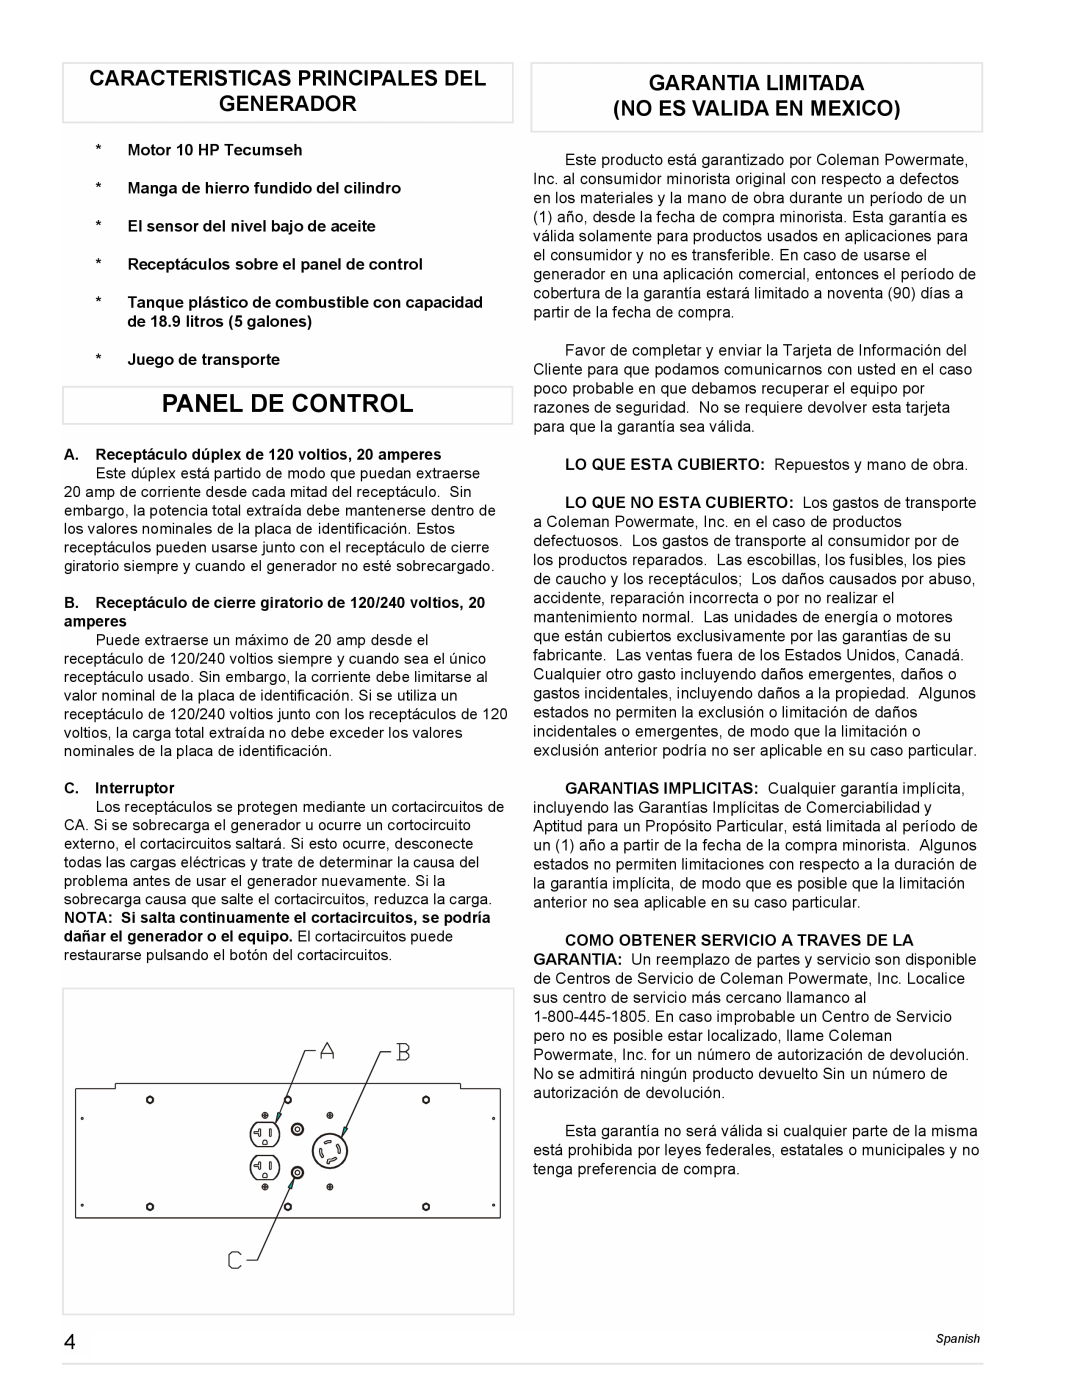 Coleman PM0525302.18 Panel De Control, Caracteristicas Principales Del Generador, Garantia Limitada No Es Valida En Mexico 